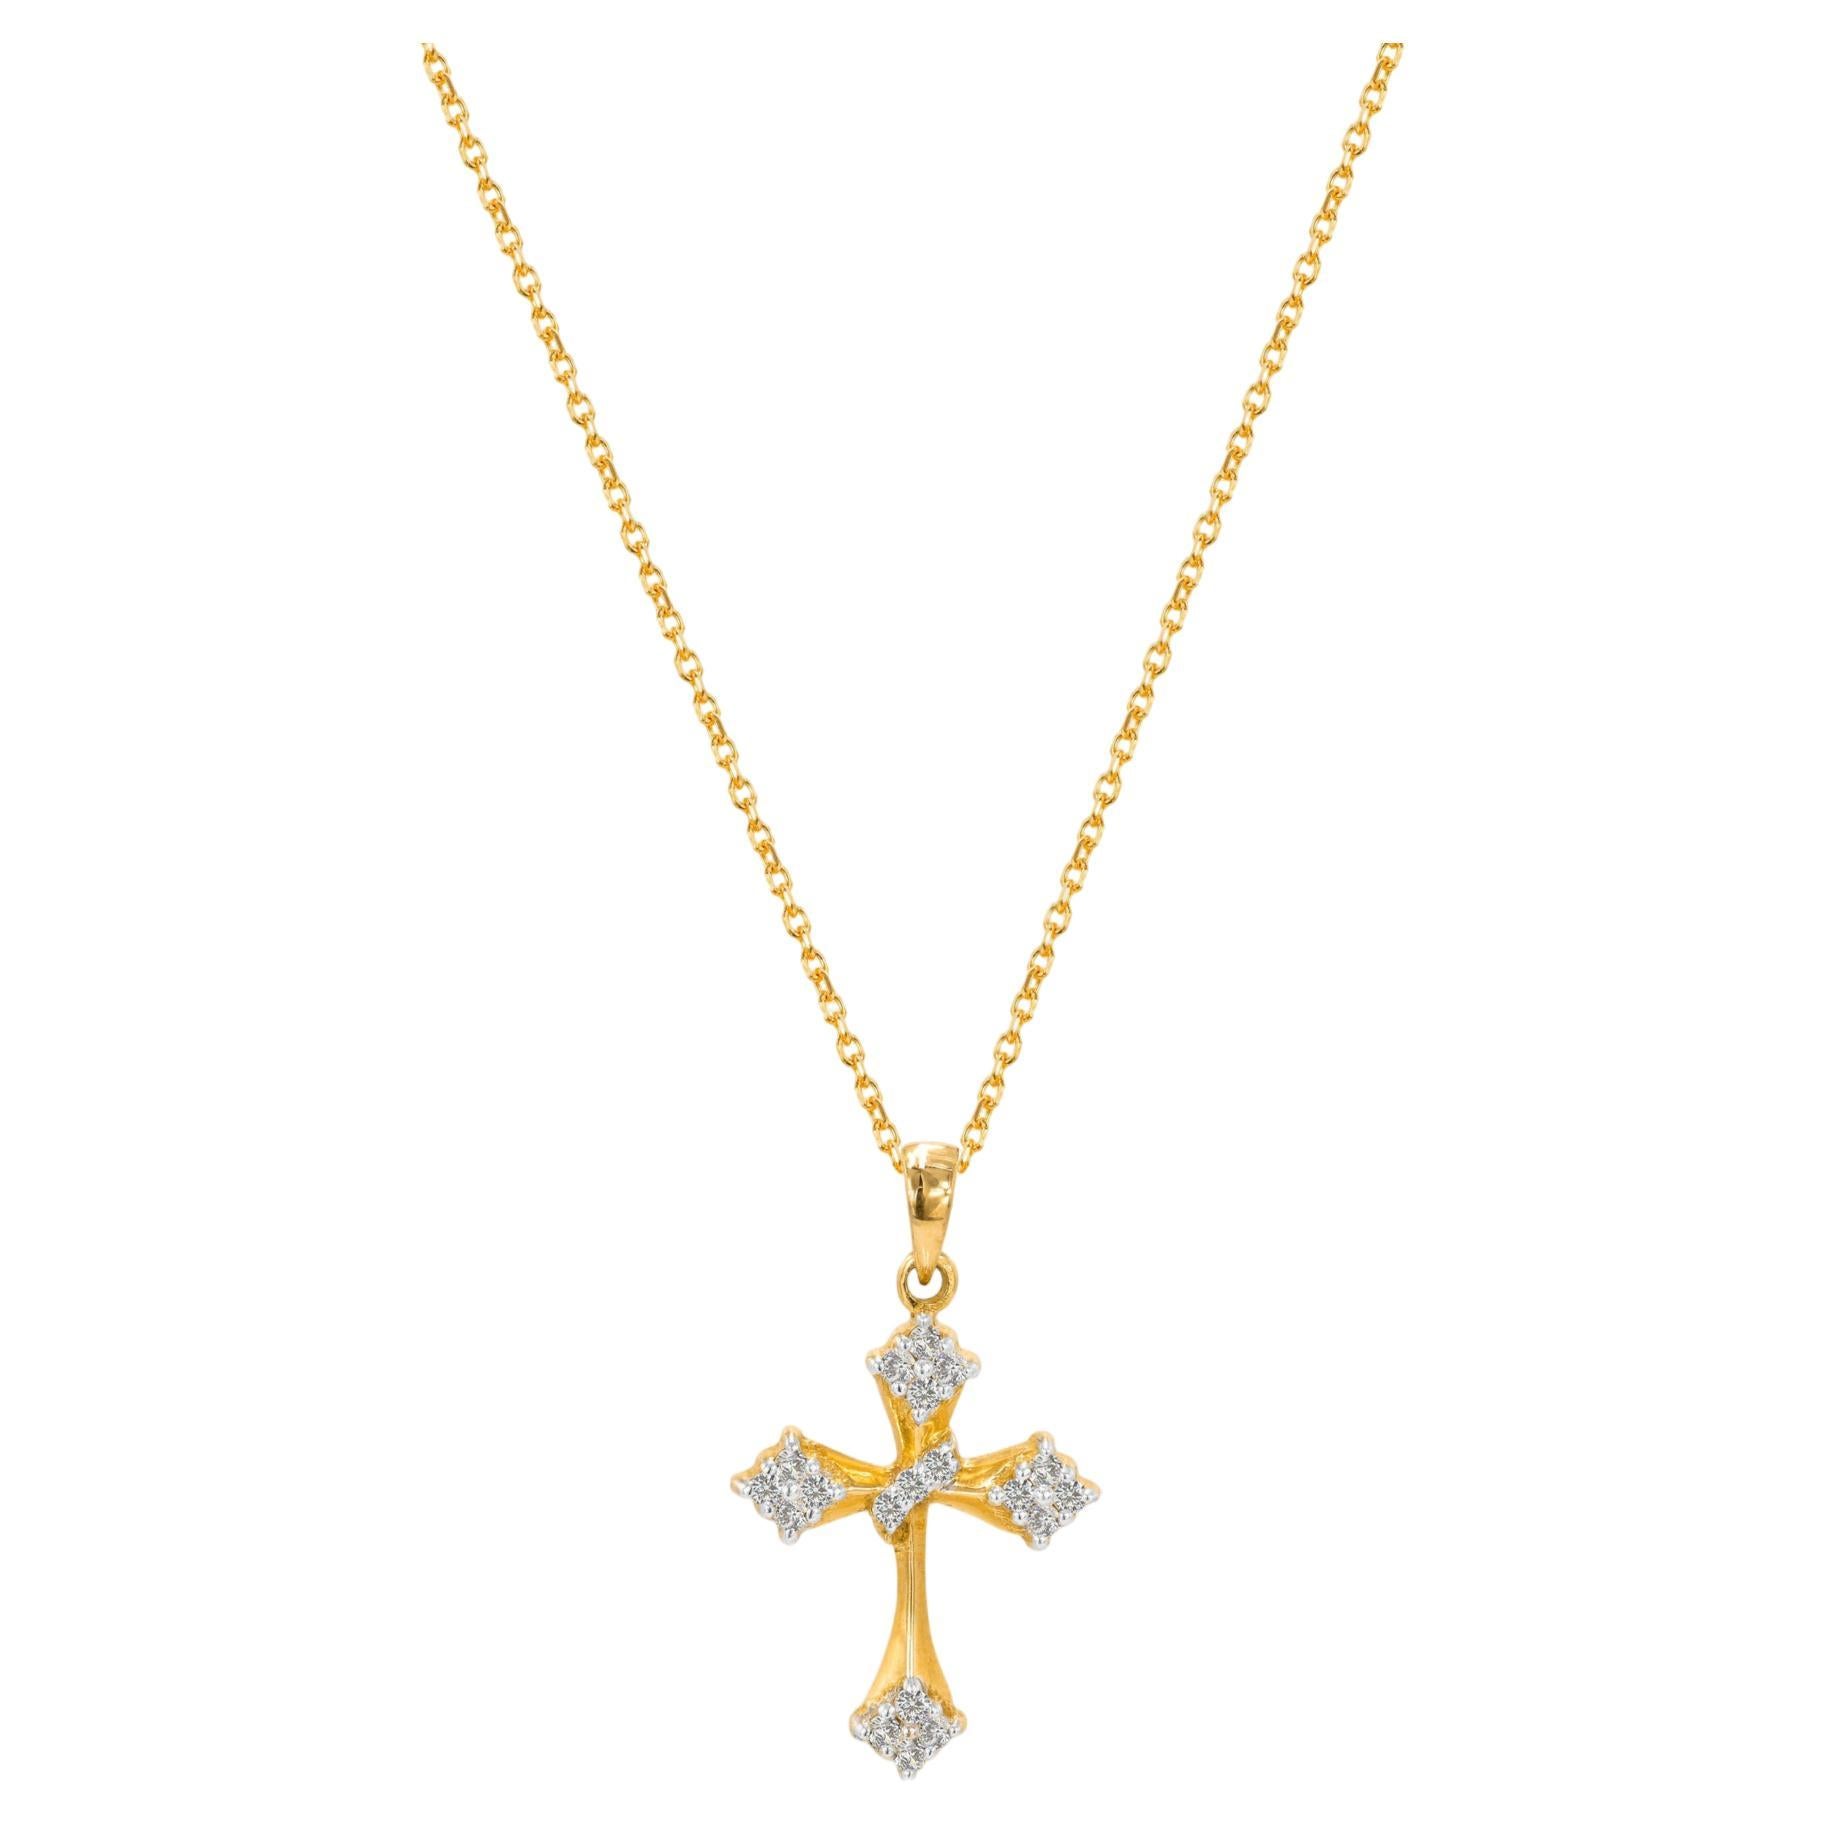 Collier religieux en or massif 14 carats avec pendentif croix et breloque en diamant